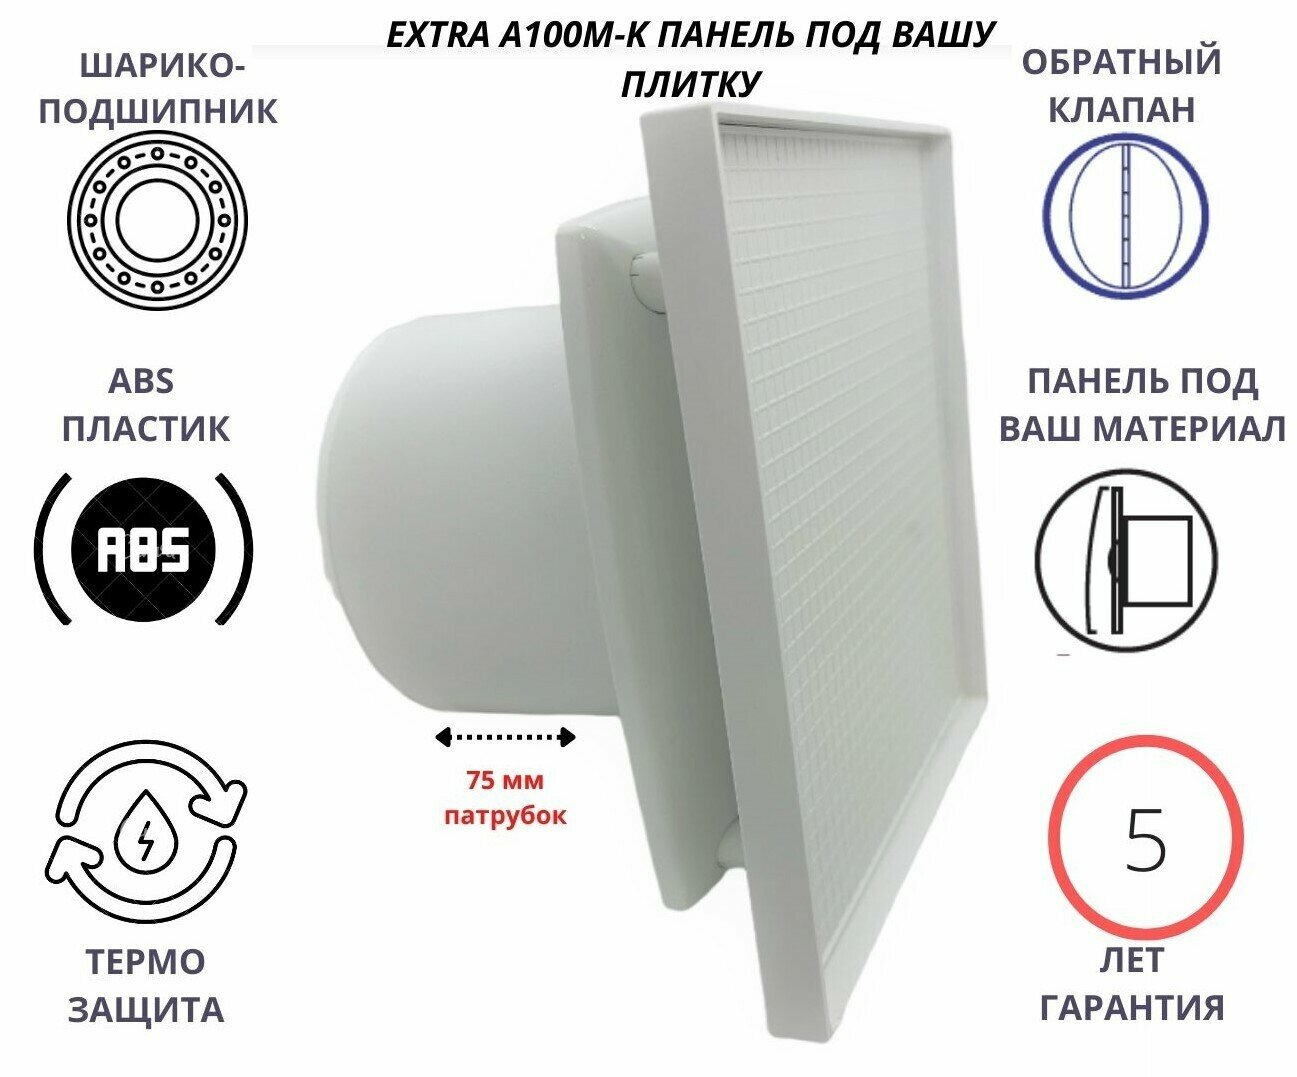 Вентилятор D100мм с панелью под вашу керамическую плитку и с обратным клапаном EXTRA A100М-PL, Сербия